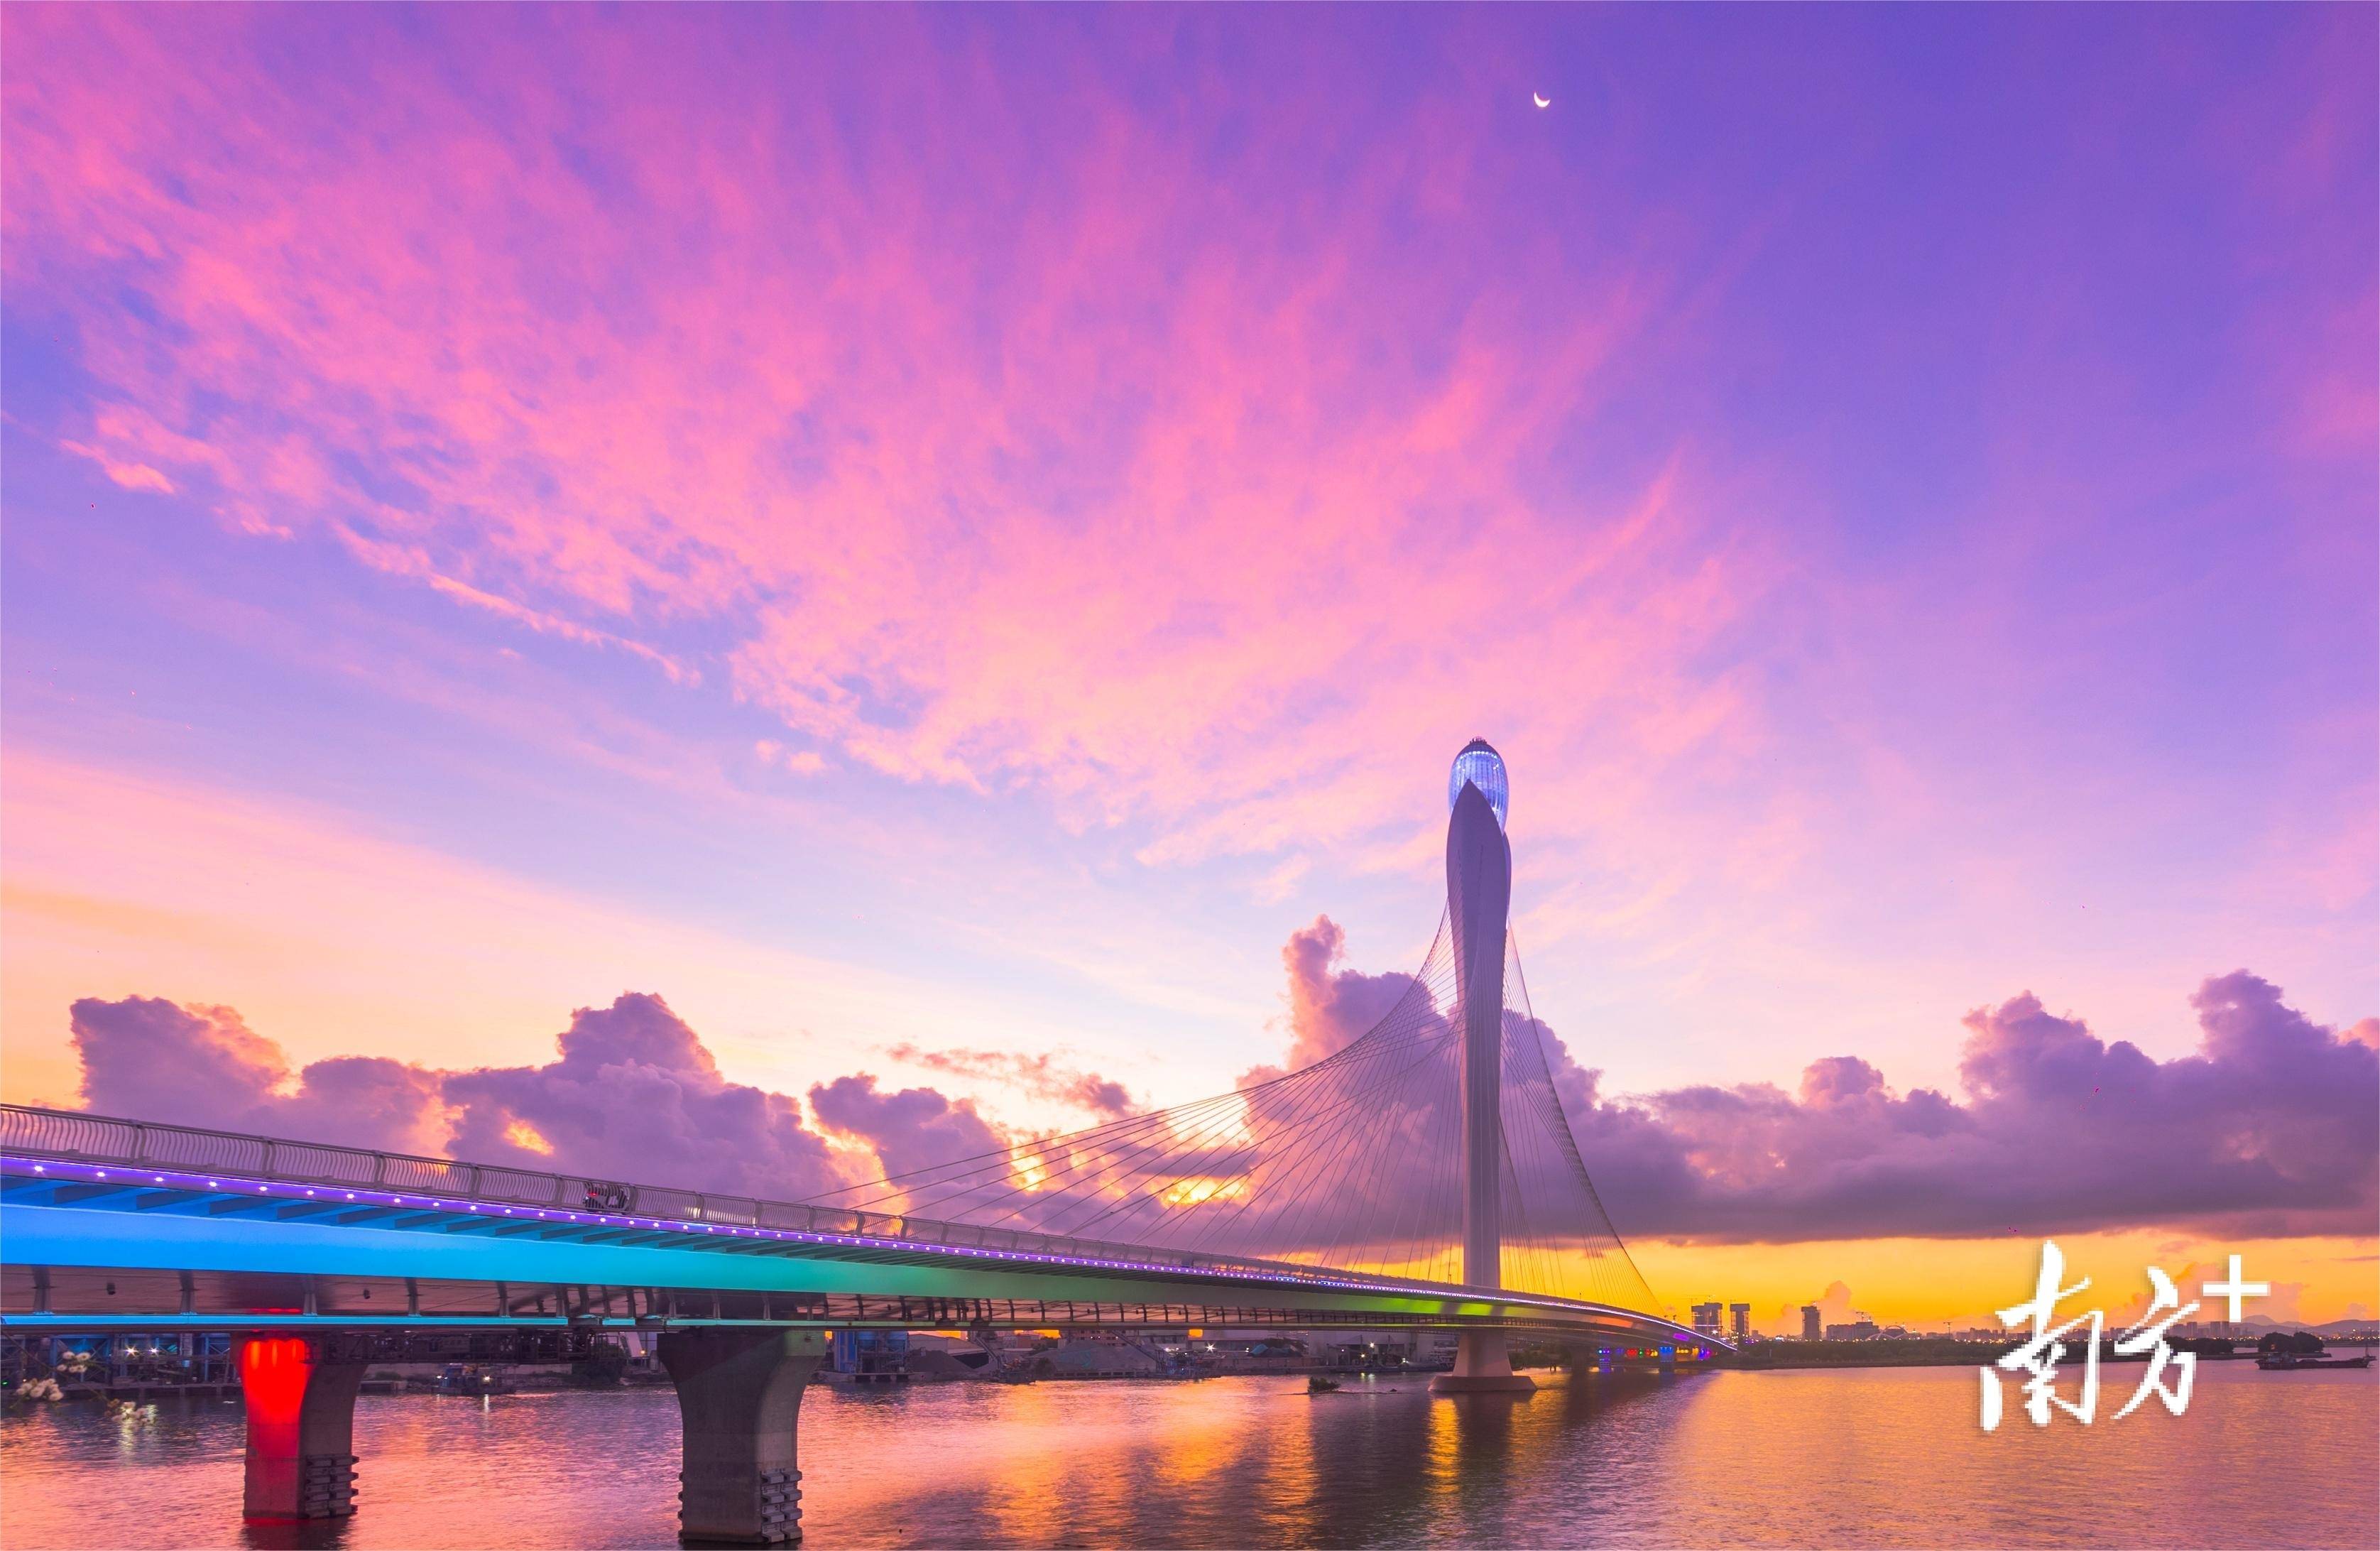 全国十大最美桥梁网络评选,来为东莞滨海湾大桥助力